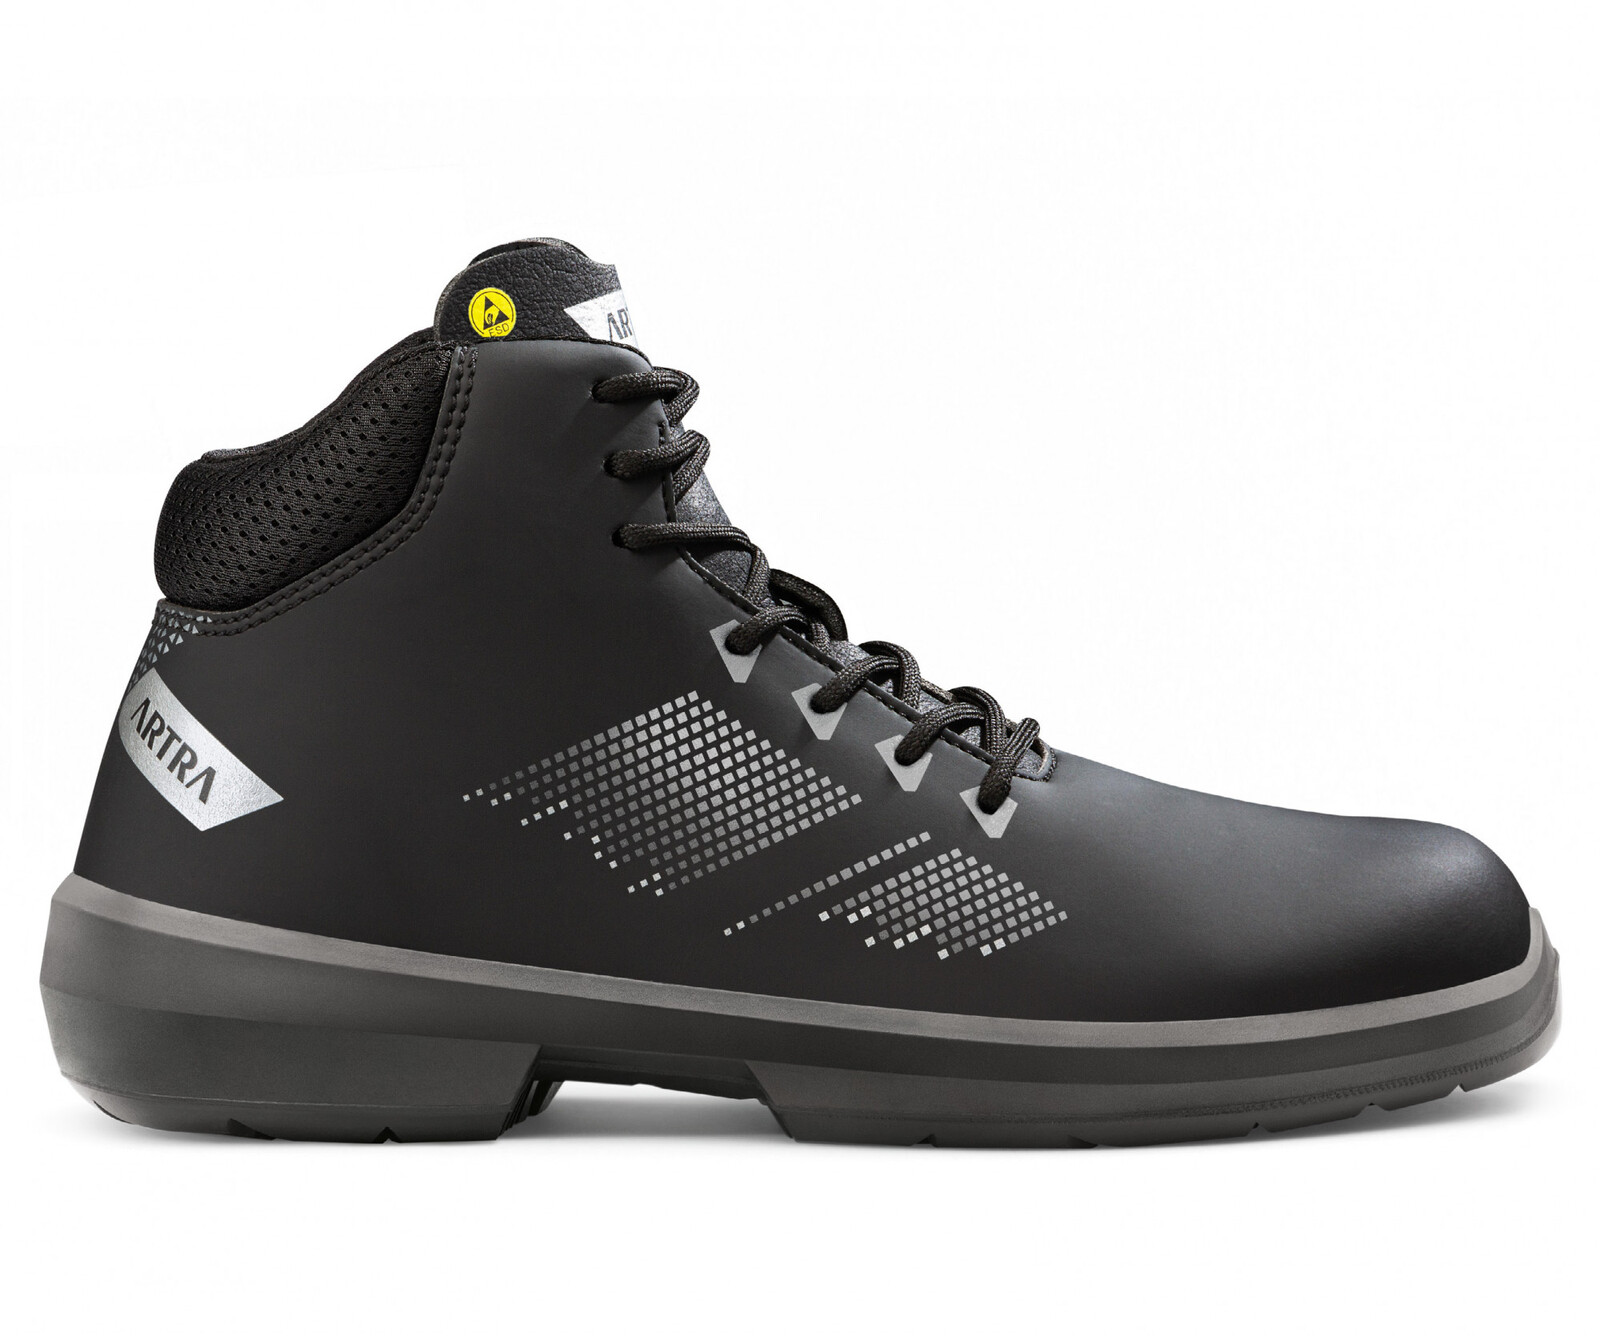 Bezpečnostná členková obuv Artra Arrival 855 676560 S3 SRC ESD MF - veľkosť: 43, farba: čierna/sivá